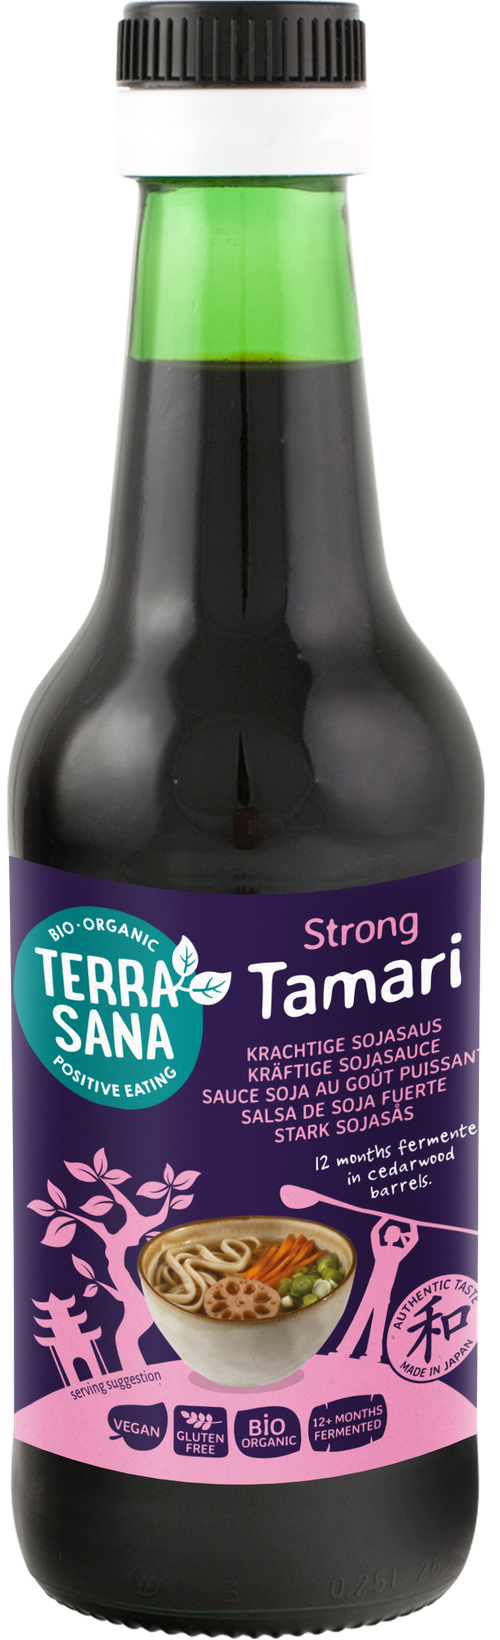 Tamari strong premium - Cuisine japonaise - Sauces soja japonaise